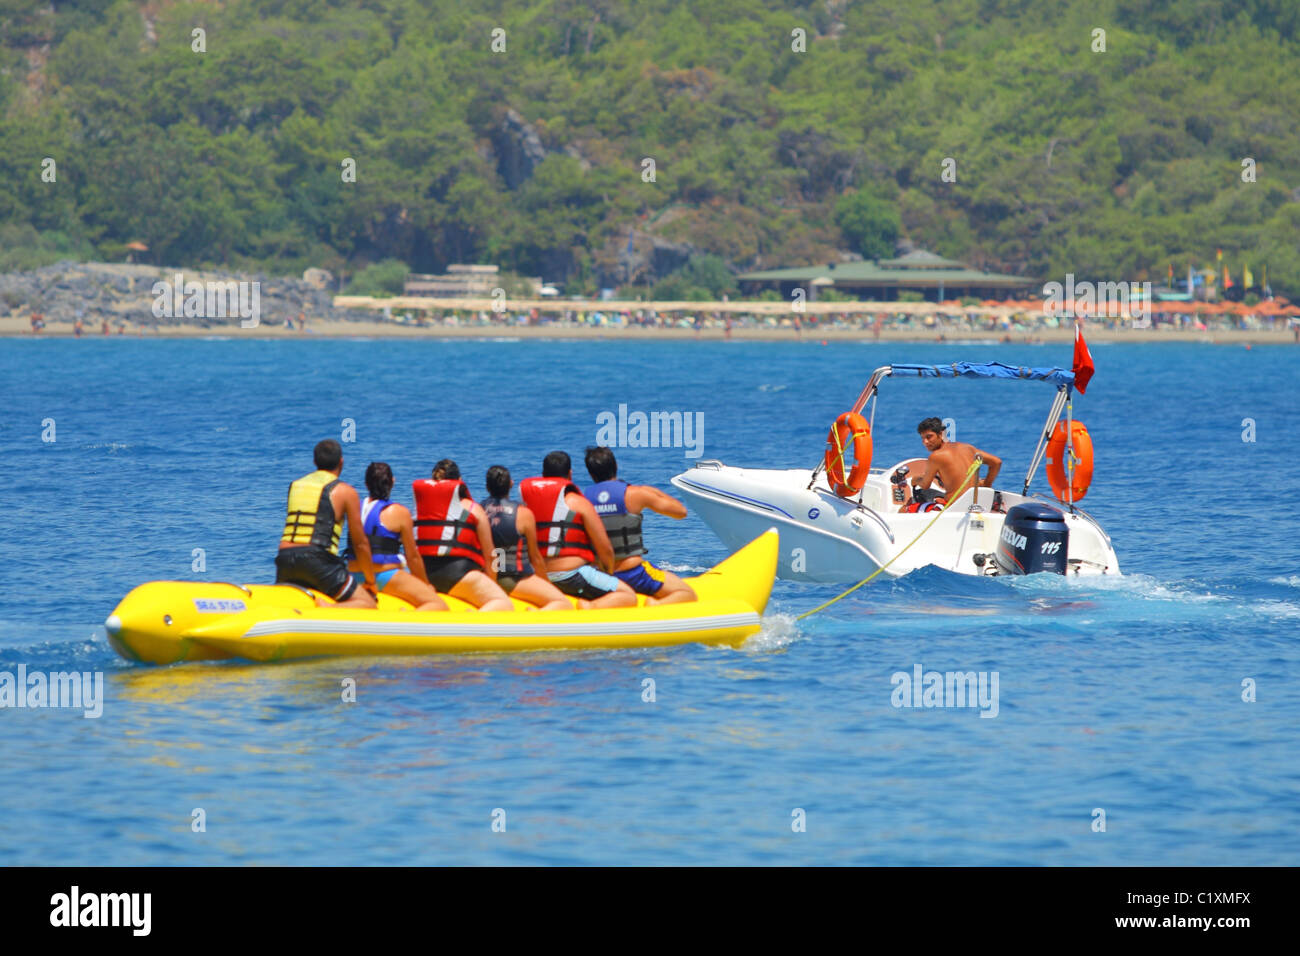 Sechs Leute sitzen auf einer Wasser-Banane vor ihrer Abschleppen von einem Boot. Sarigerme, Ägäis, Mittelmeer, Türkei Stockfoto